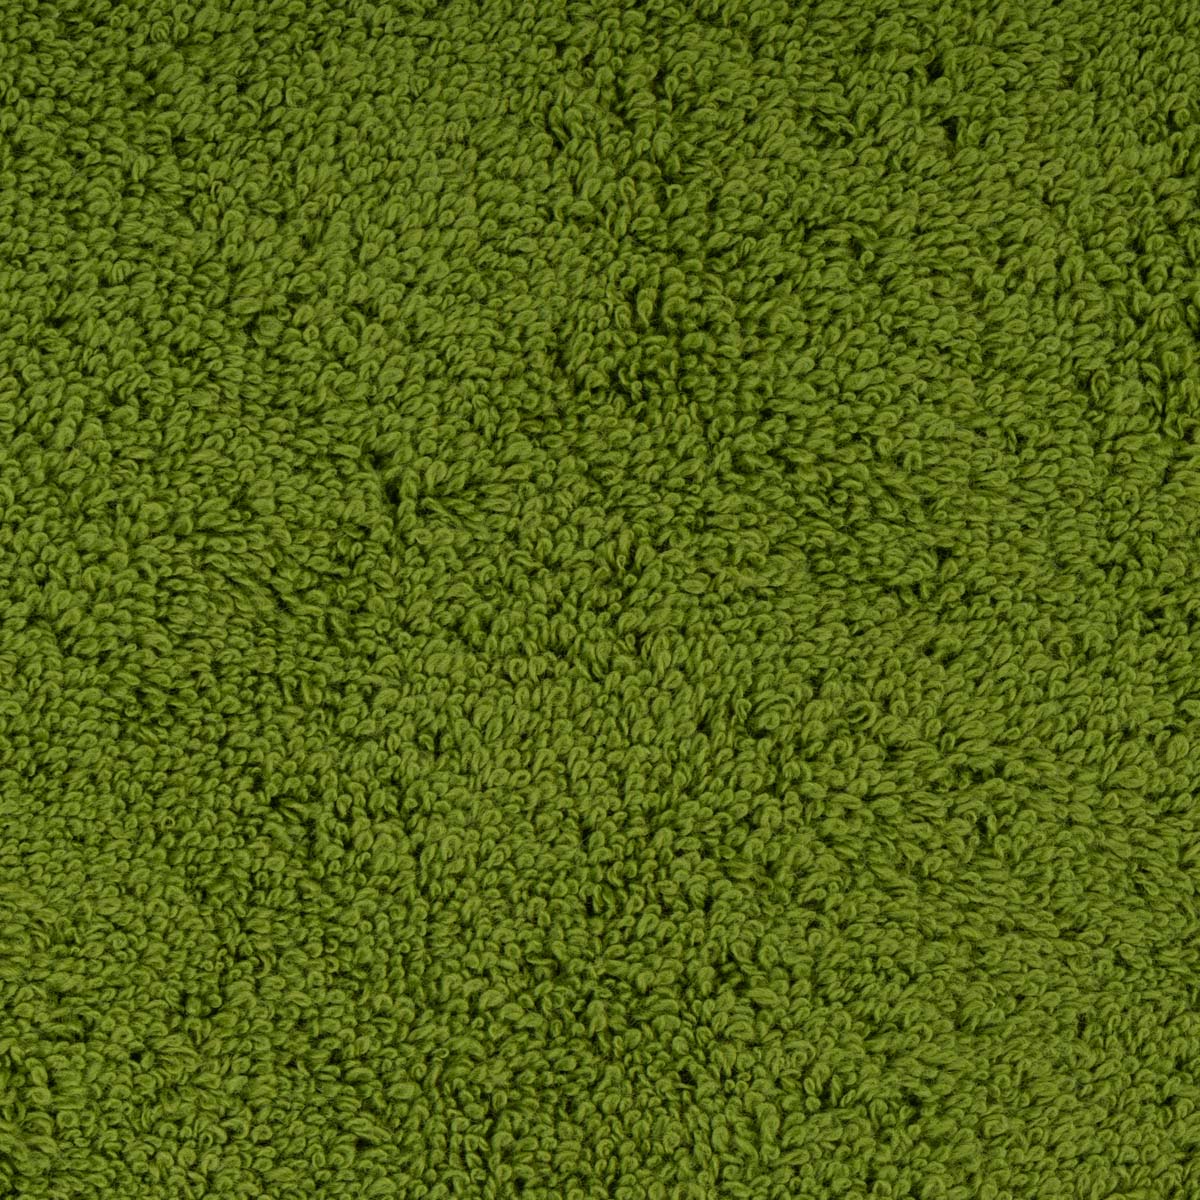 Полотенце махровое Lameirinho Aqua 70x140см, цвет оливковый Lameirinho 925177/musgo/070140 925177/musgo/070140 - фото 3